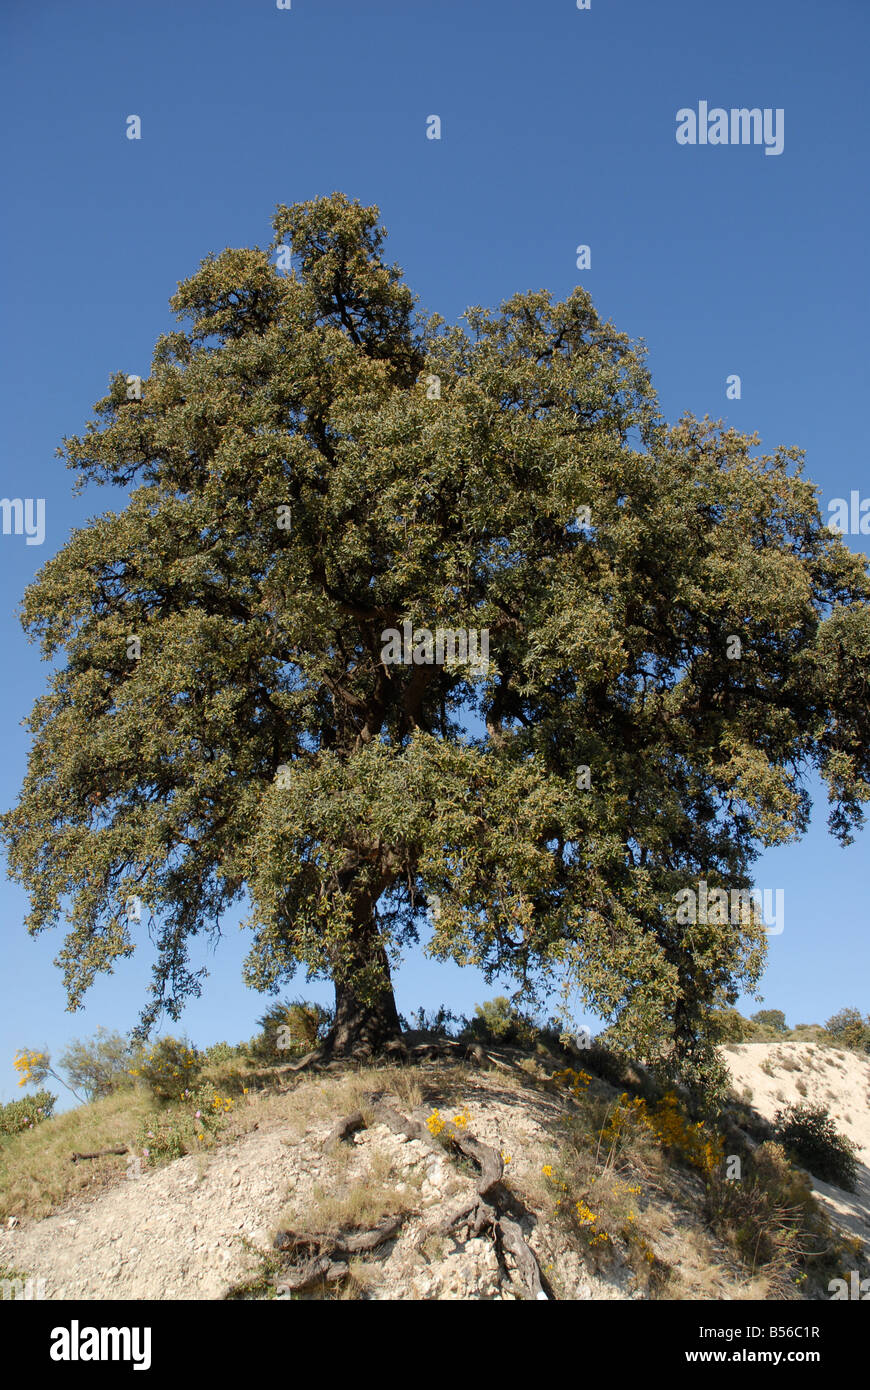 Holm Oak Tree (Carrasca de la tia Sofia, 250 anni) Sierra de Serrella, Provincia di Alicante, Comunidad Valenciana, Spagna Foto Stock